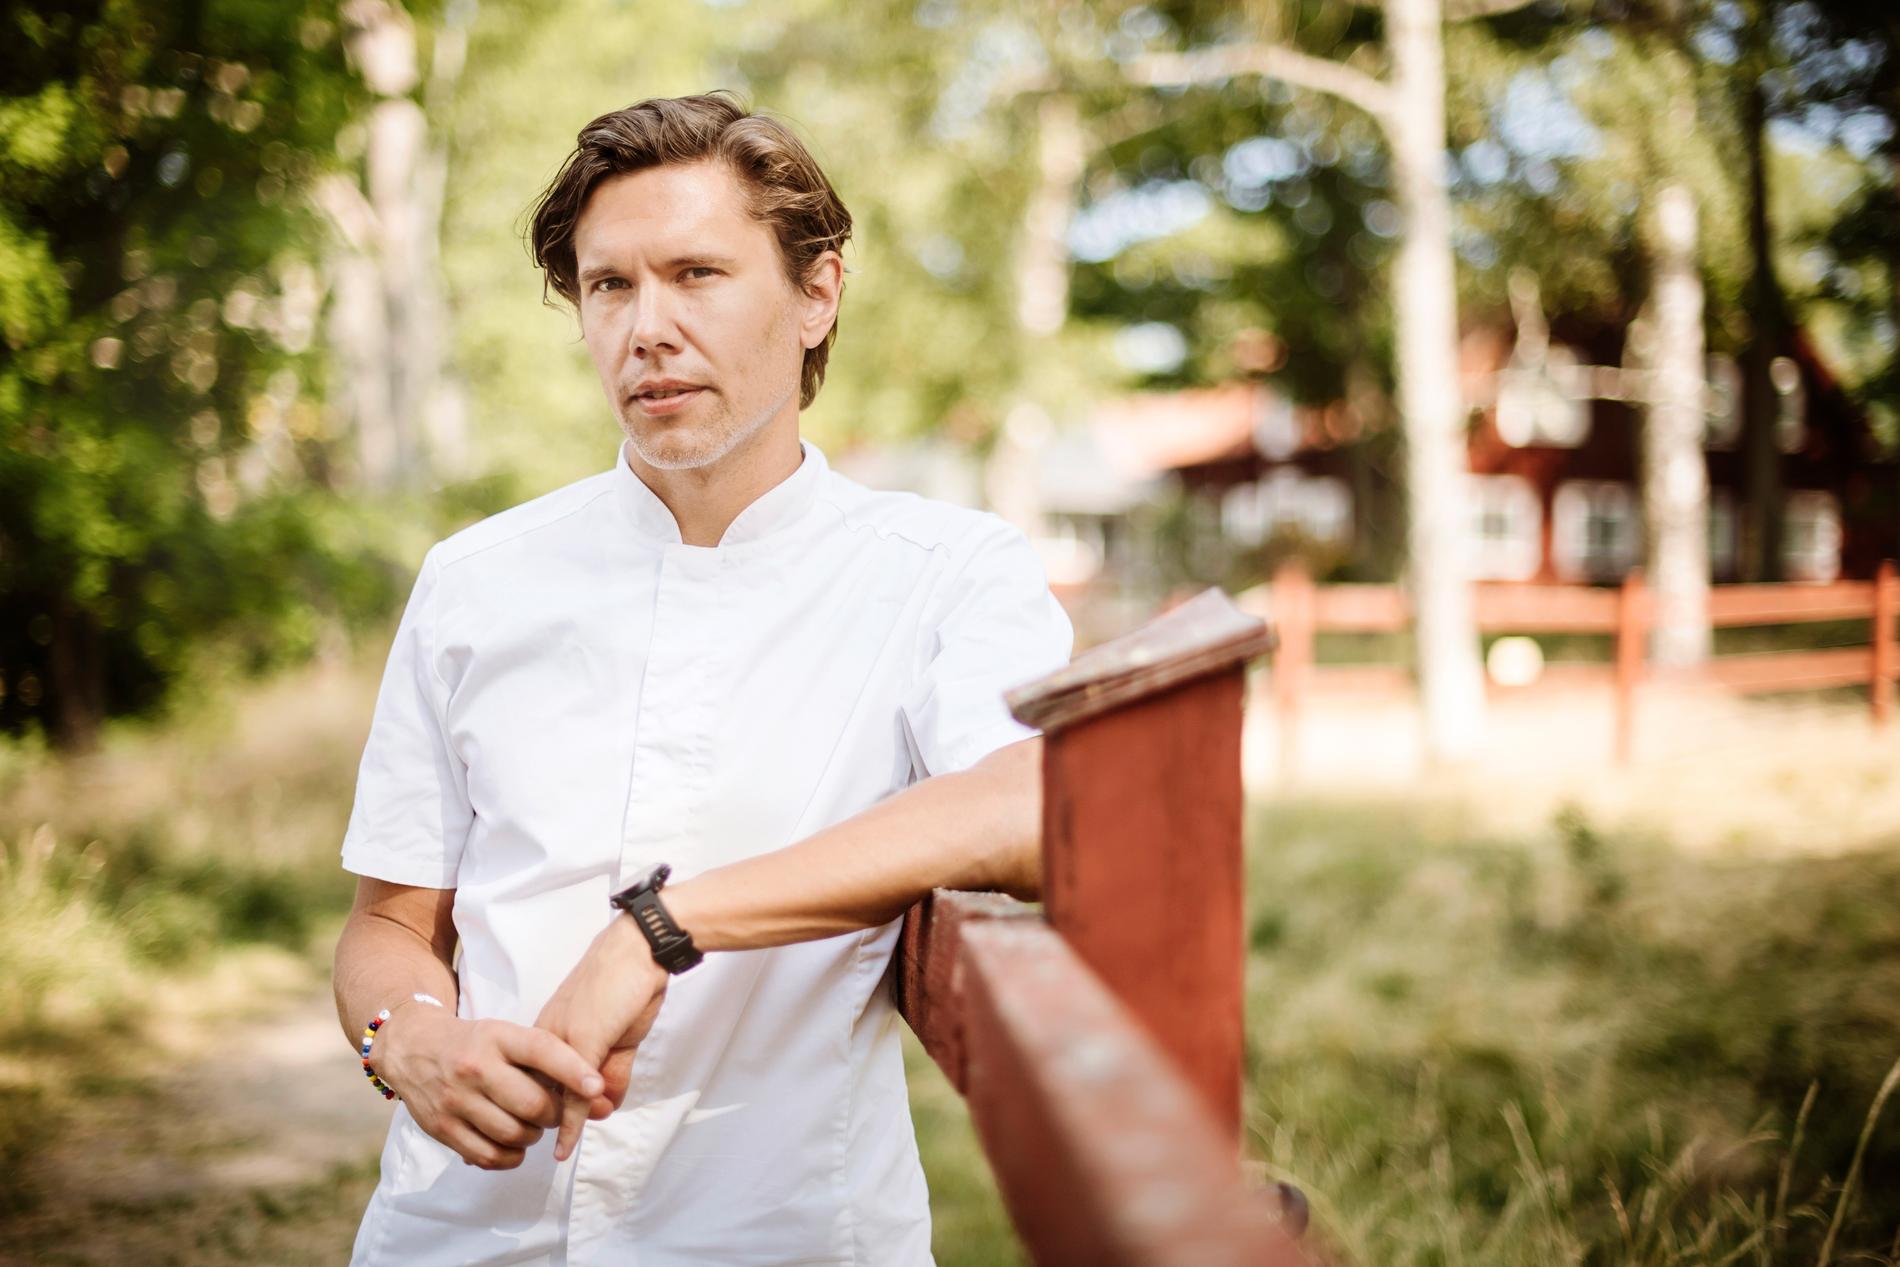 Tommy Myllymäki är ny i juryn i "Sveriges mästerkock". Arkivbild.